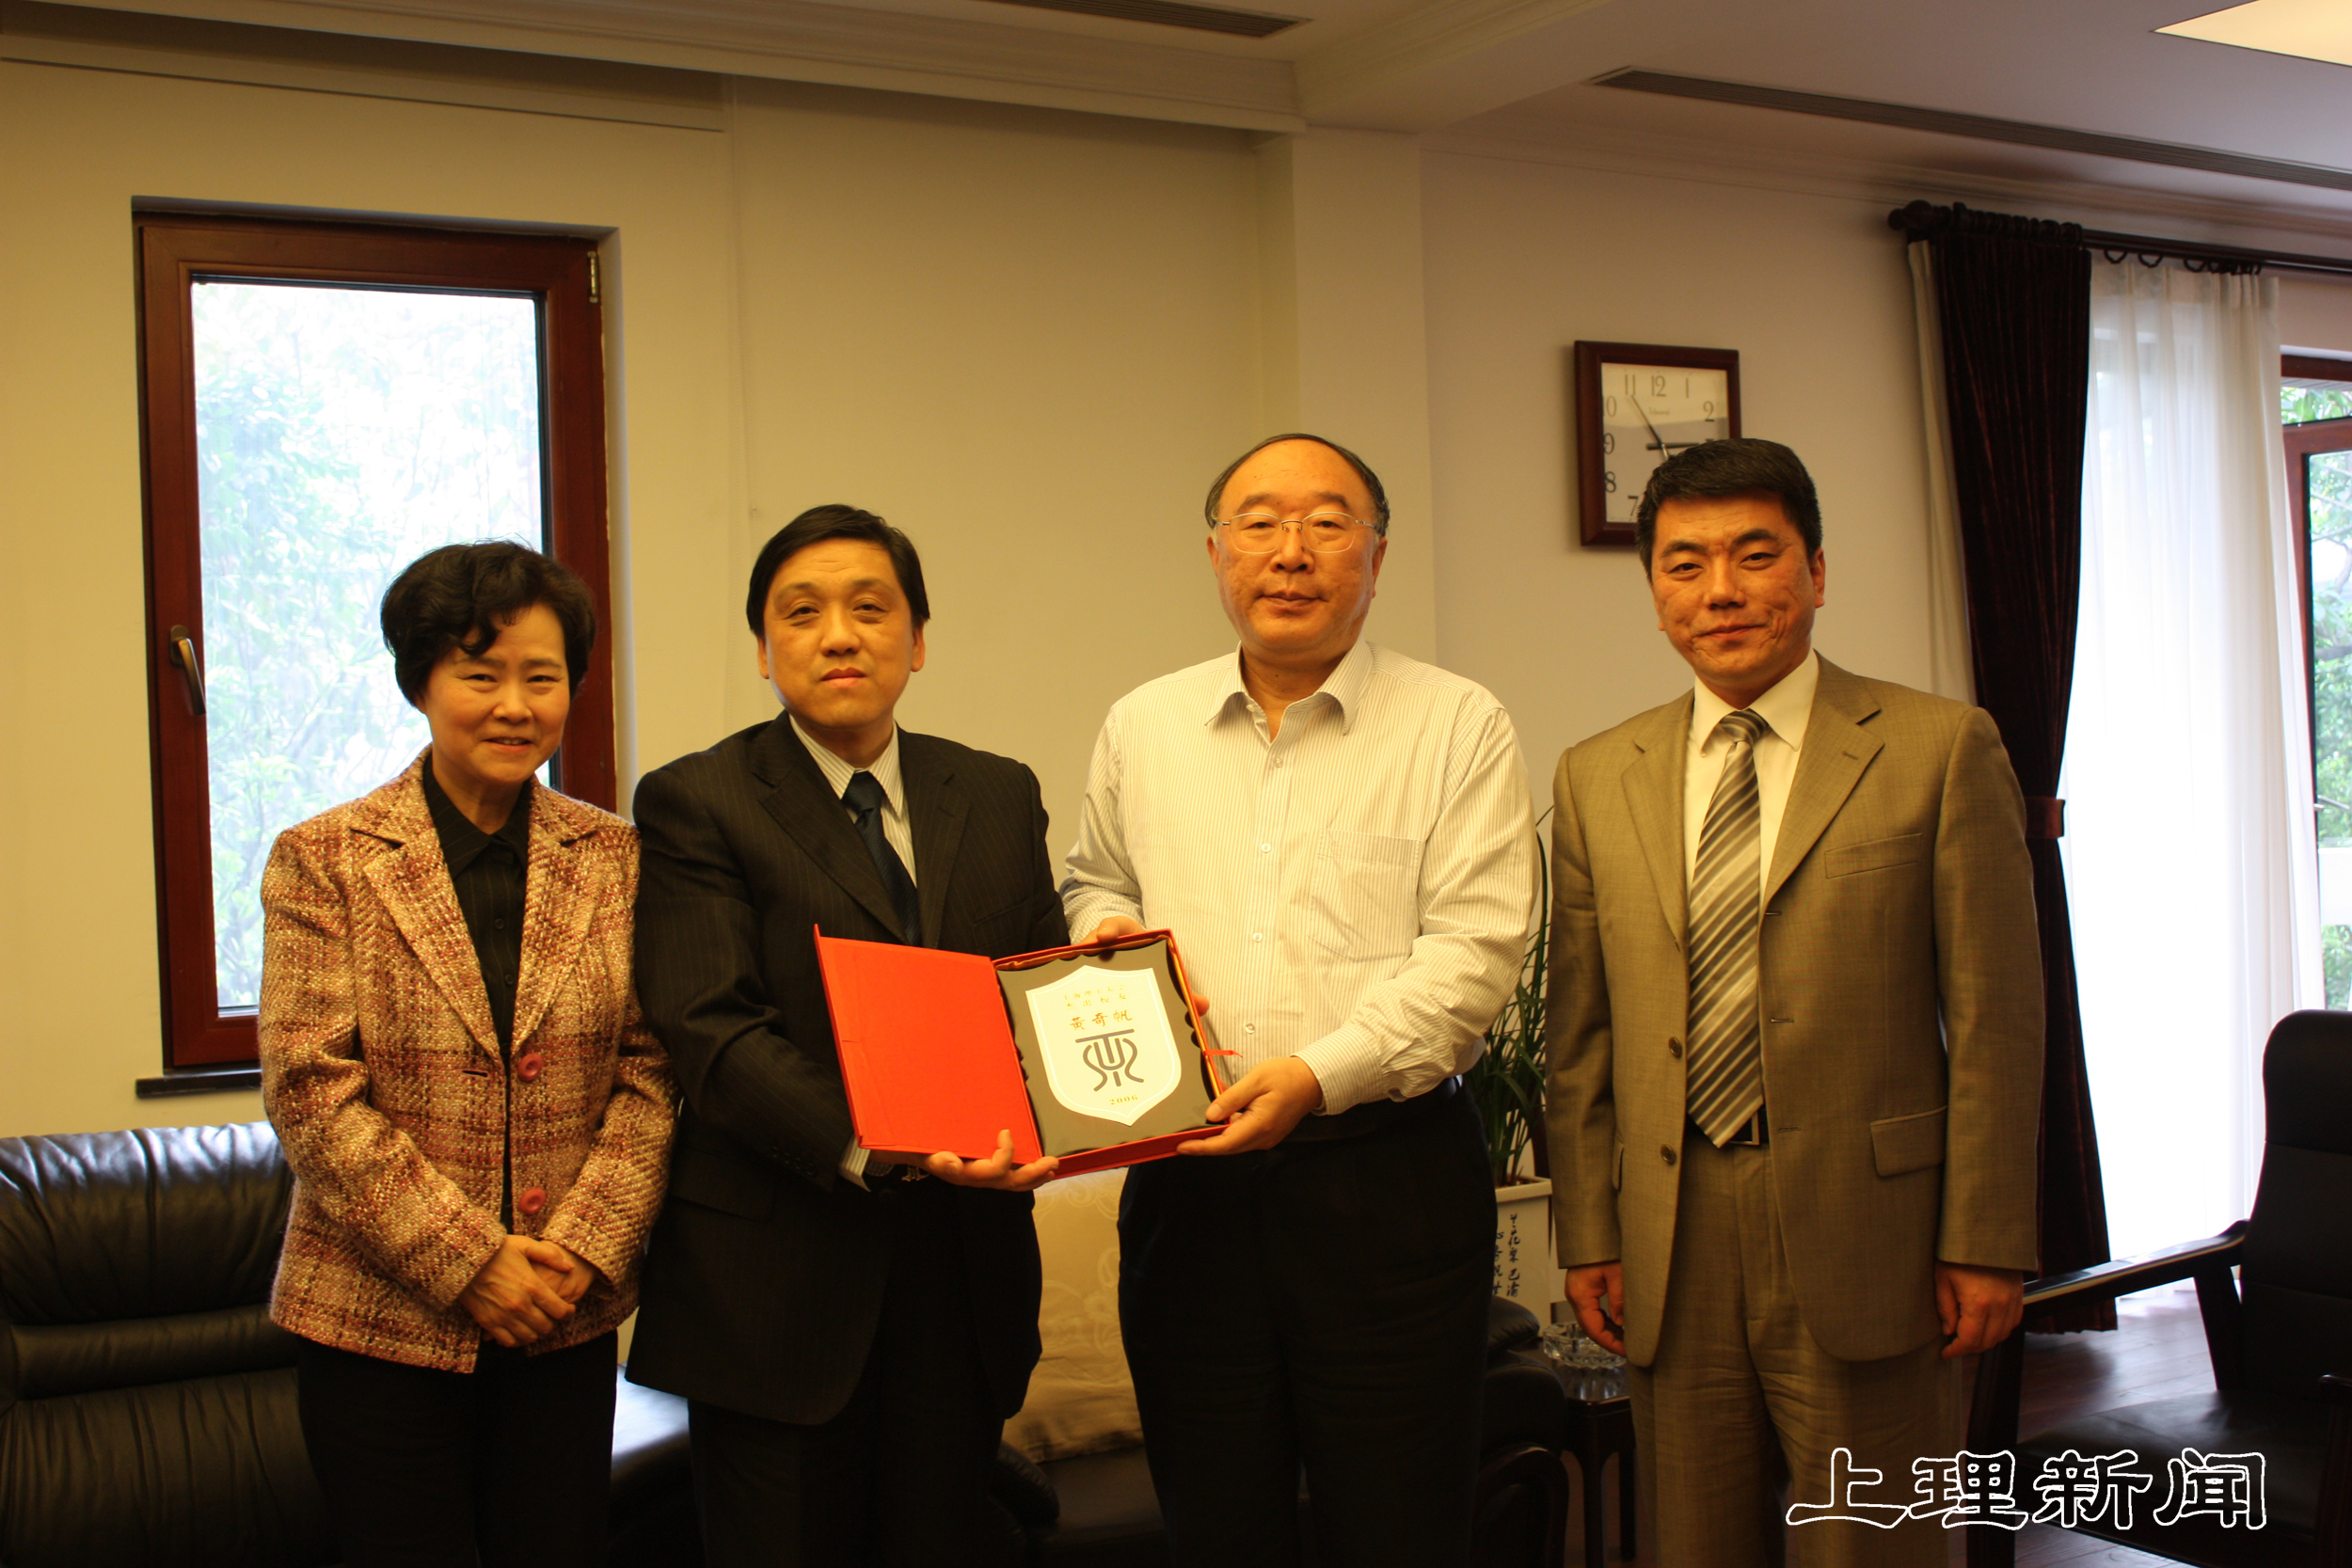 向黄奇帆校友颁赠“上海理工大学杰出校友”纪念牌